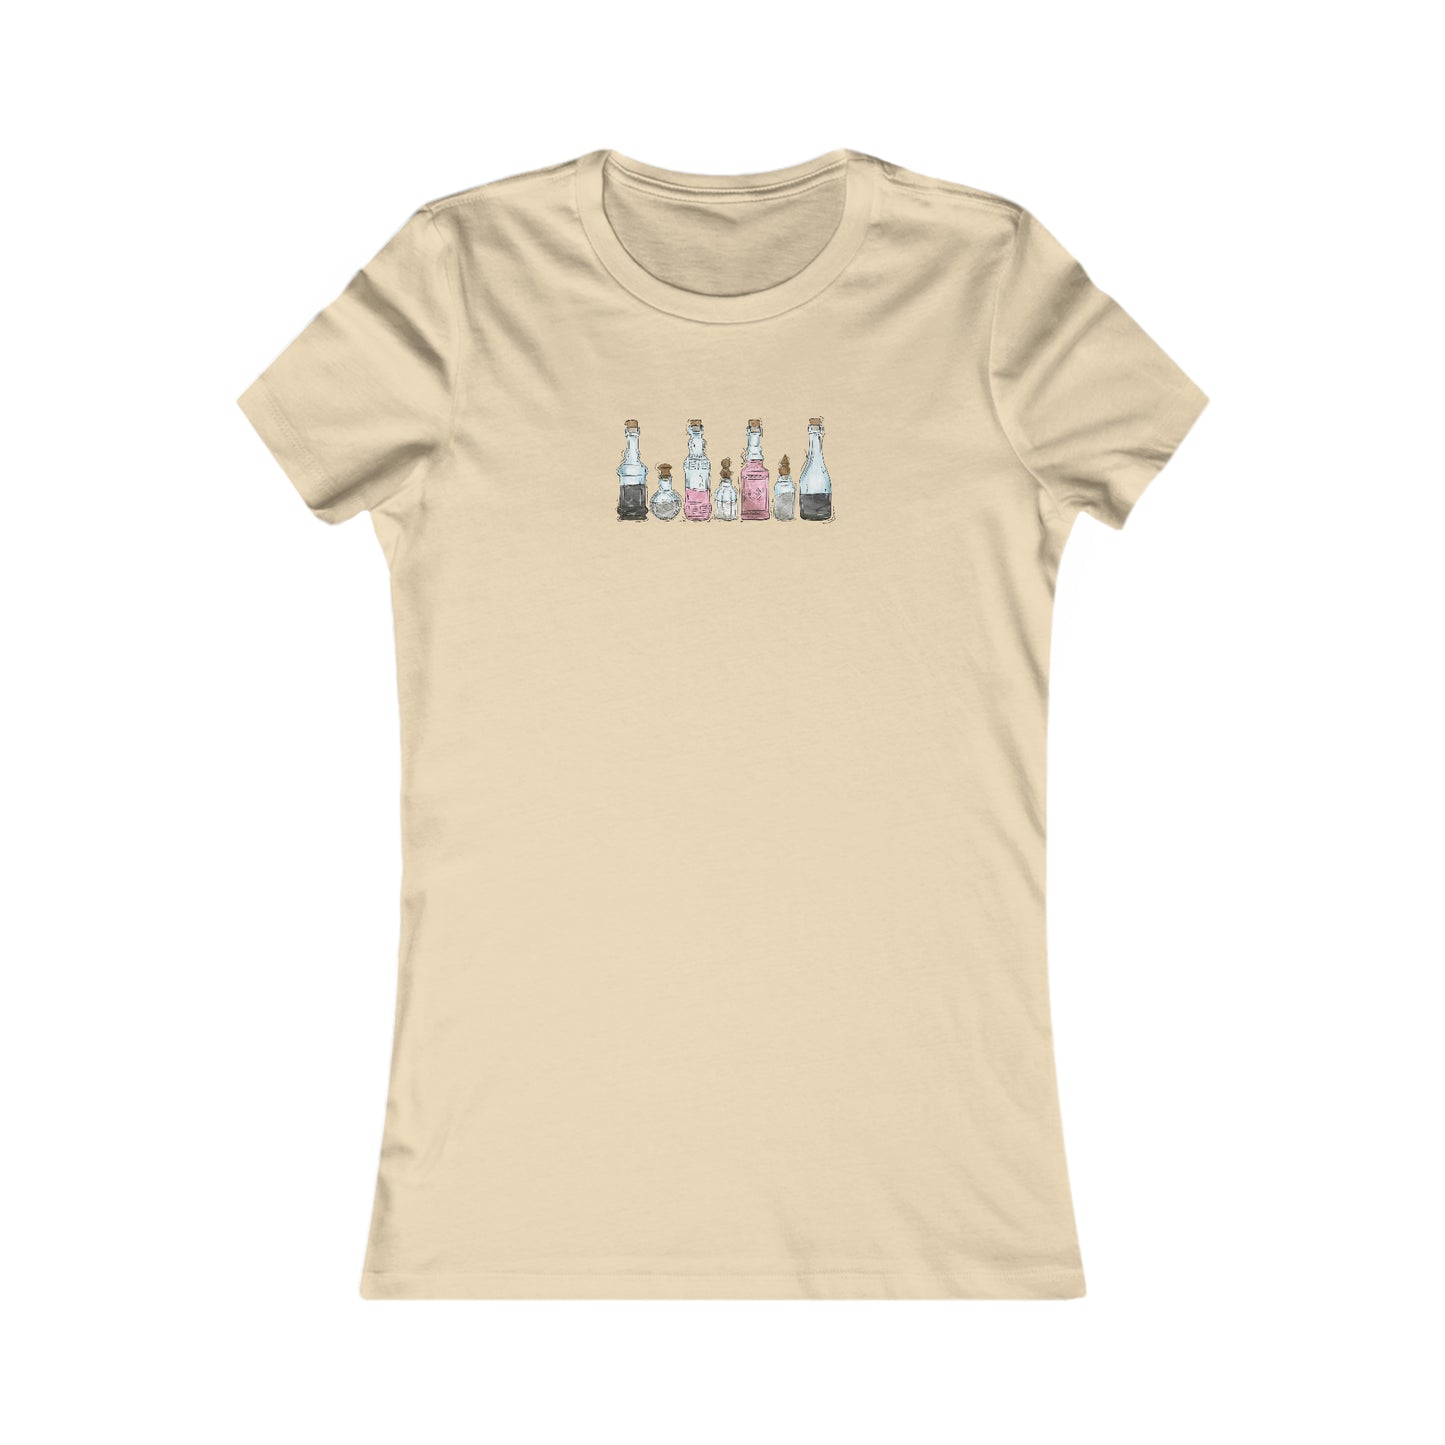 Demigirl Pride Flag Potion Bottles - Women's T-Shirt